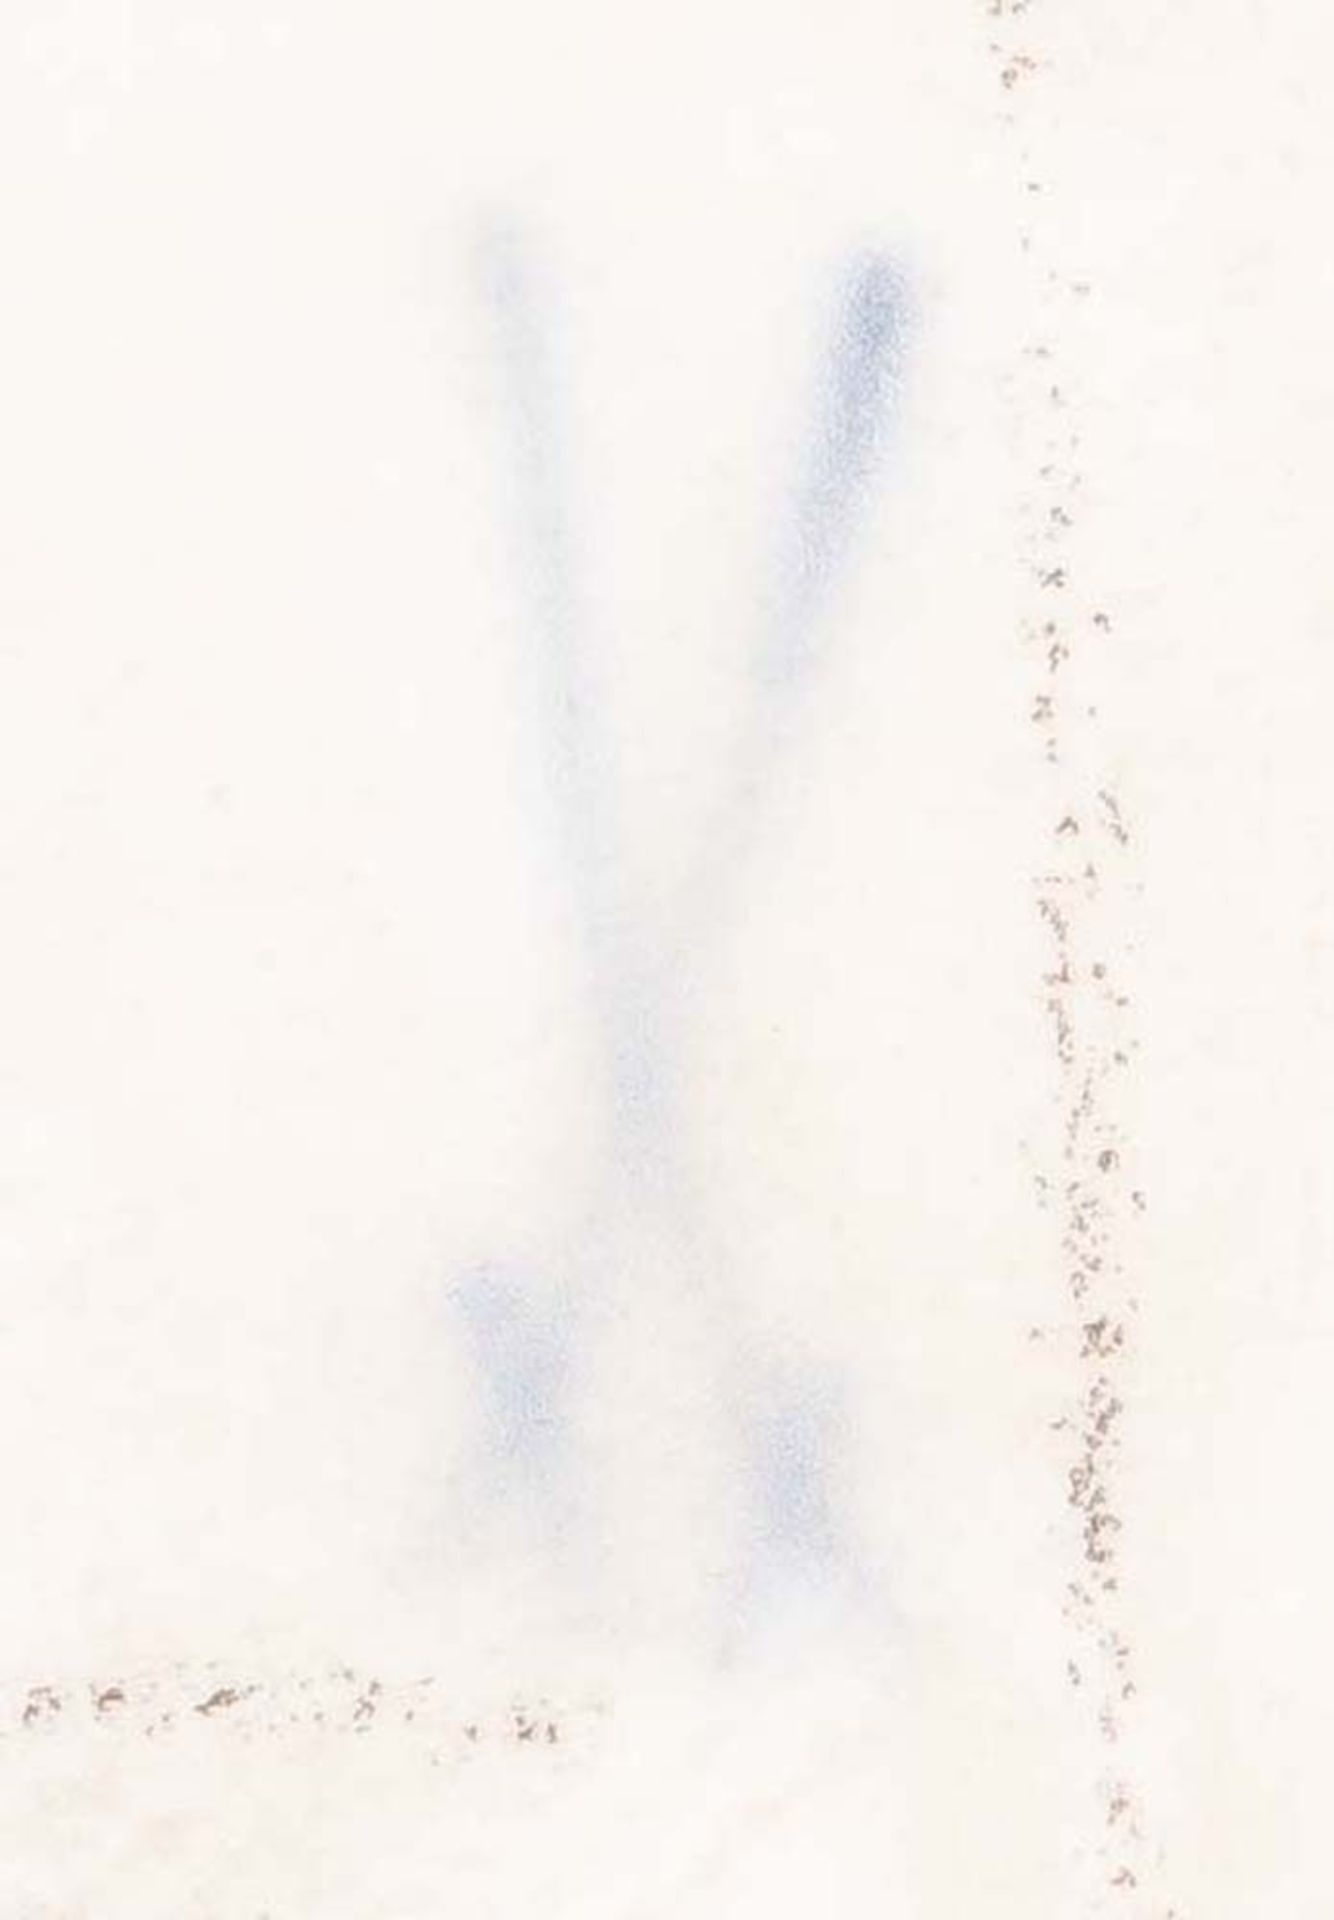 V-förmige Rocaille-Konsole. Meissen 20. Jh. Porzellan, weiß glasiert, verso blaue Schwertermarke, - Bild 2 aus 2